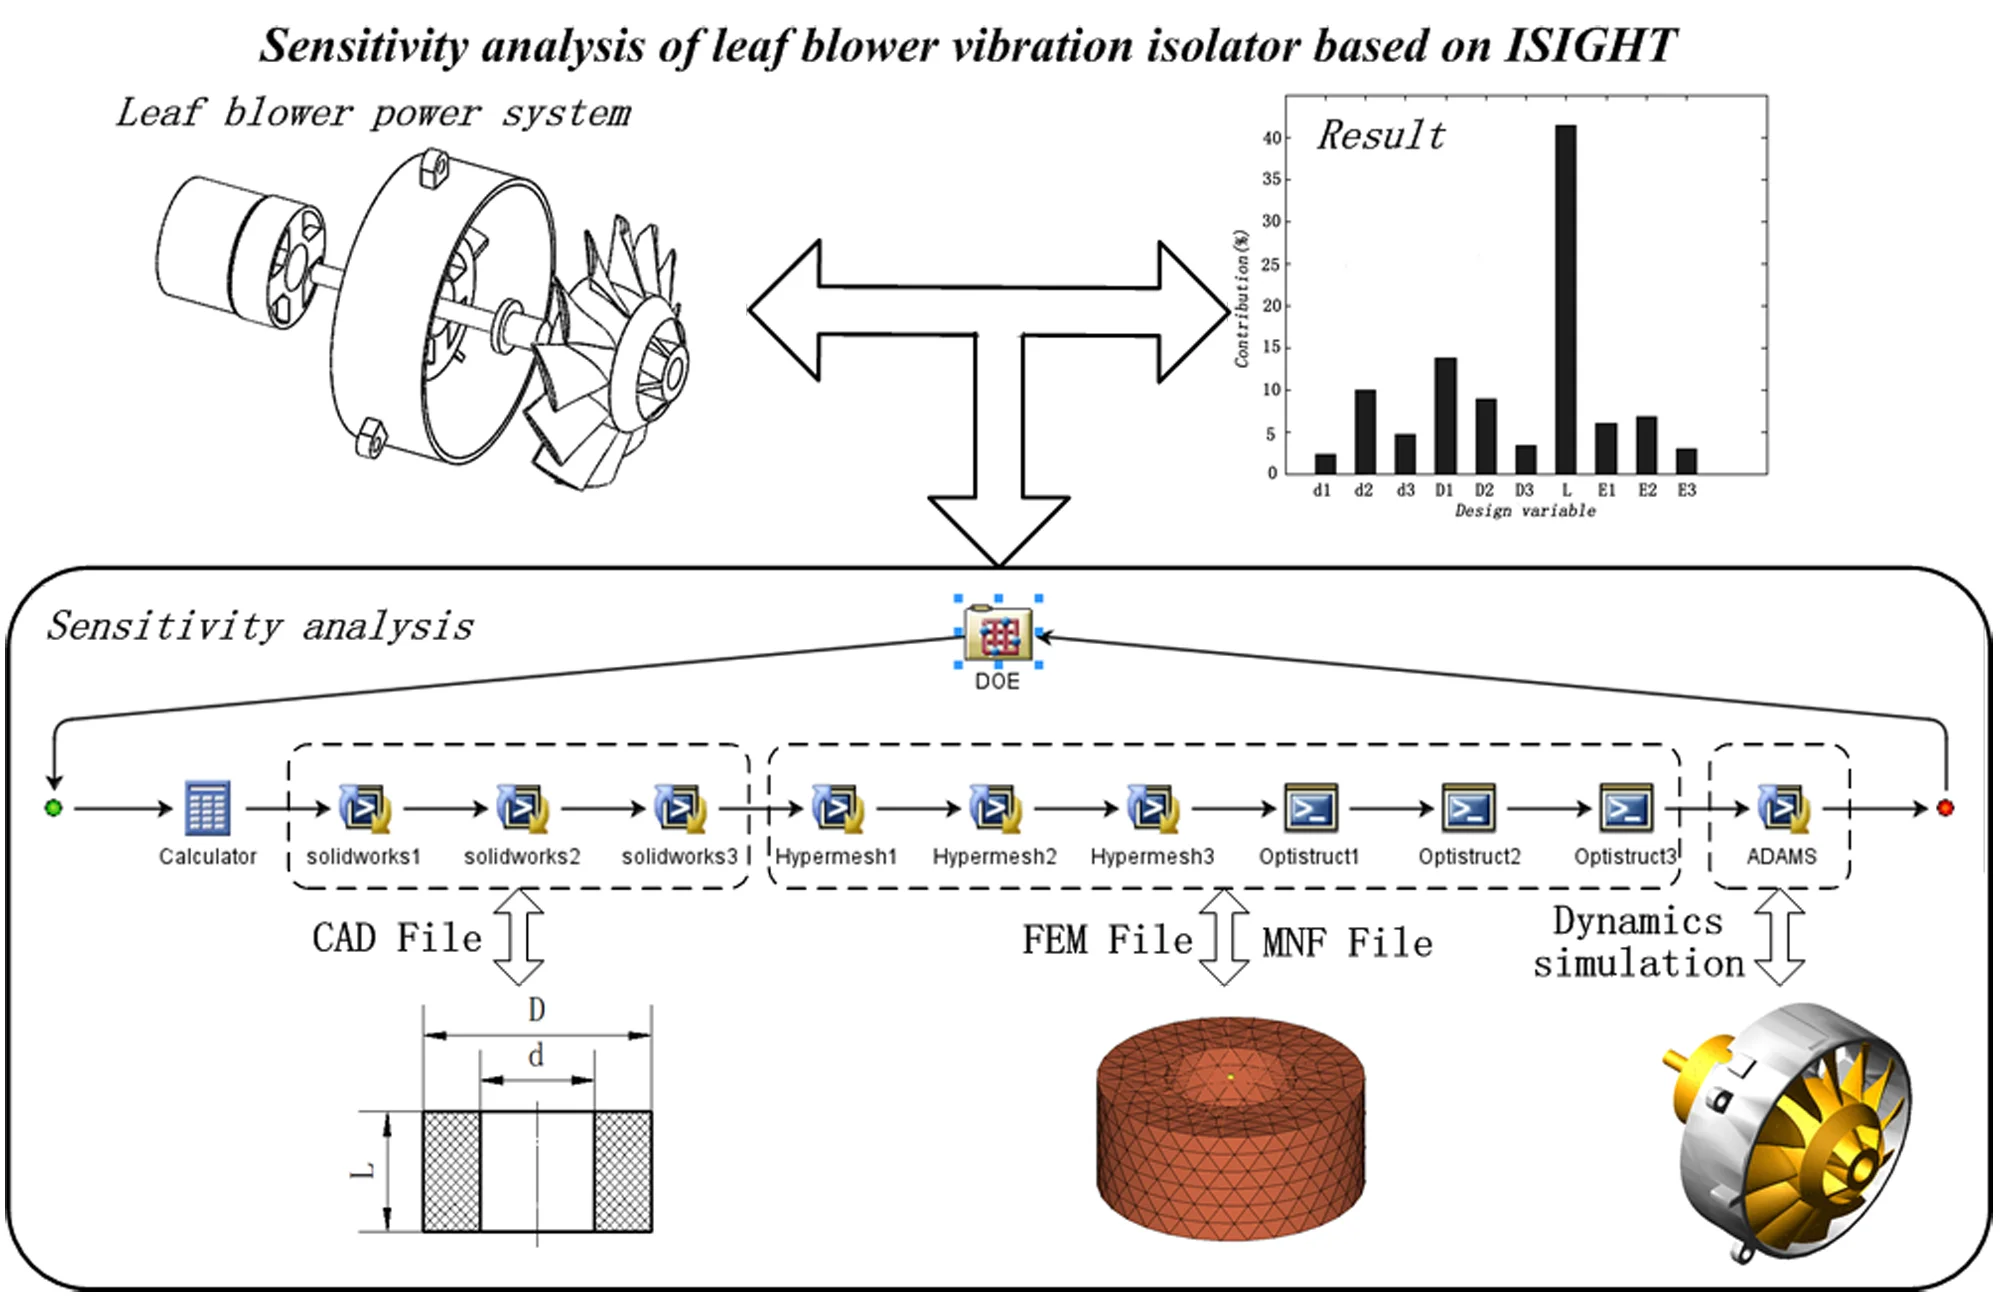 Sensitivity analysis of leaf blower vibration isolator based on ISIGHT